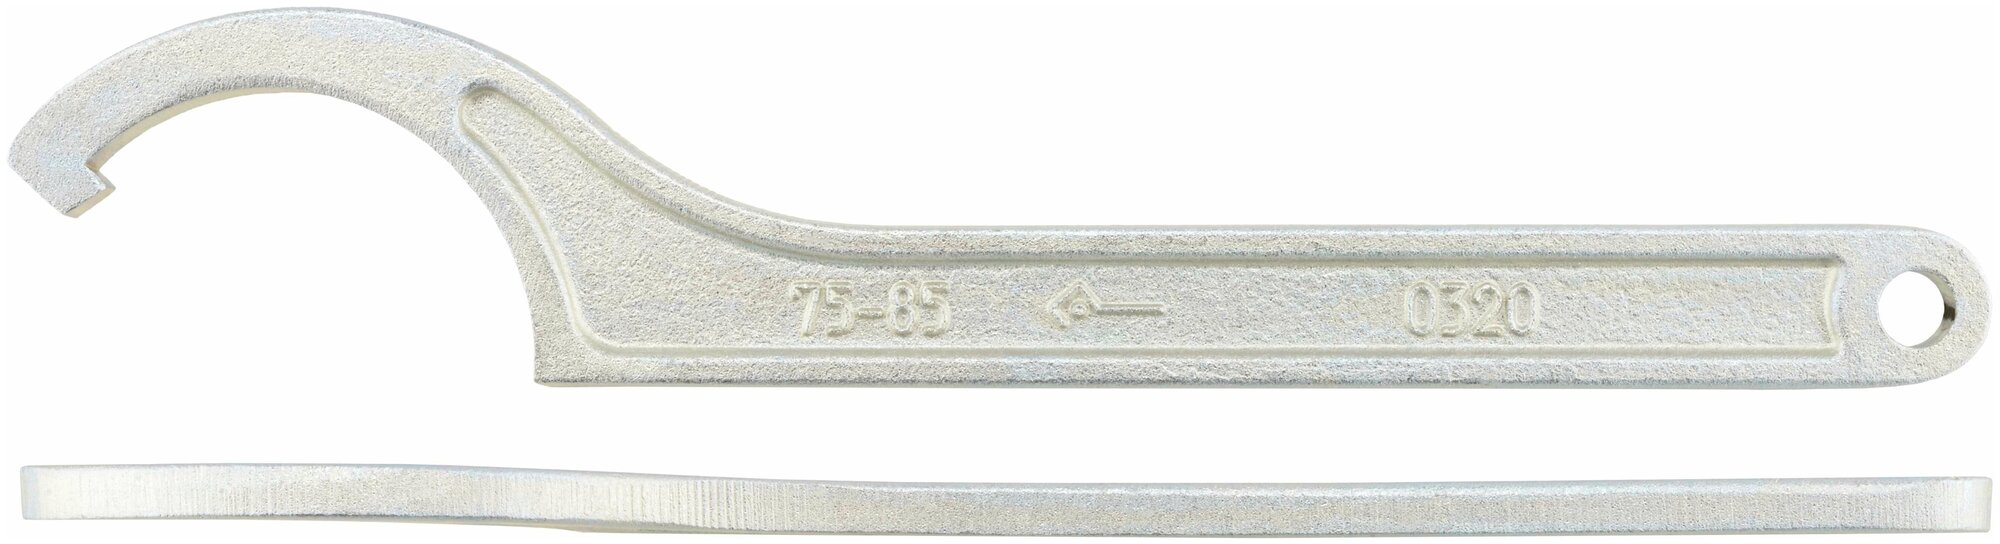 Ключ для круглых шлицевых гаек 55-60 (КЗСМИ) 11913